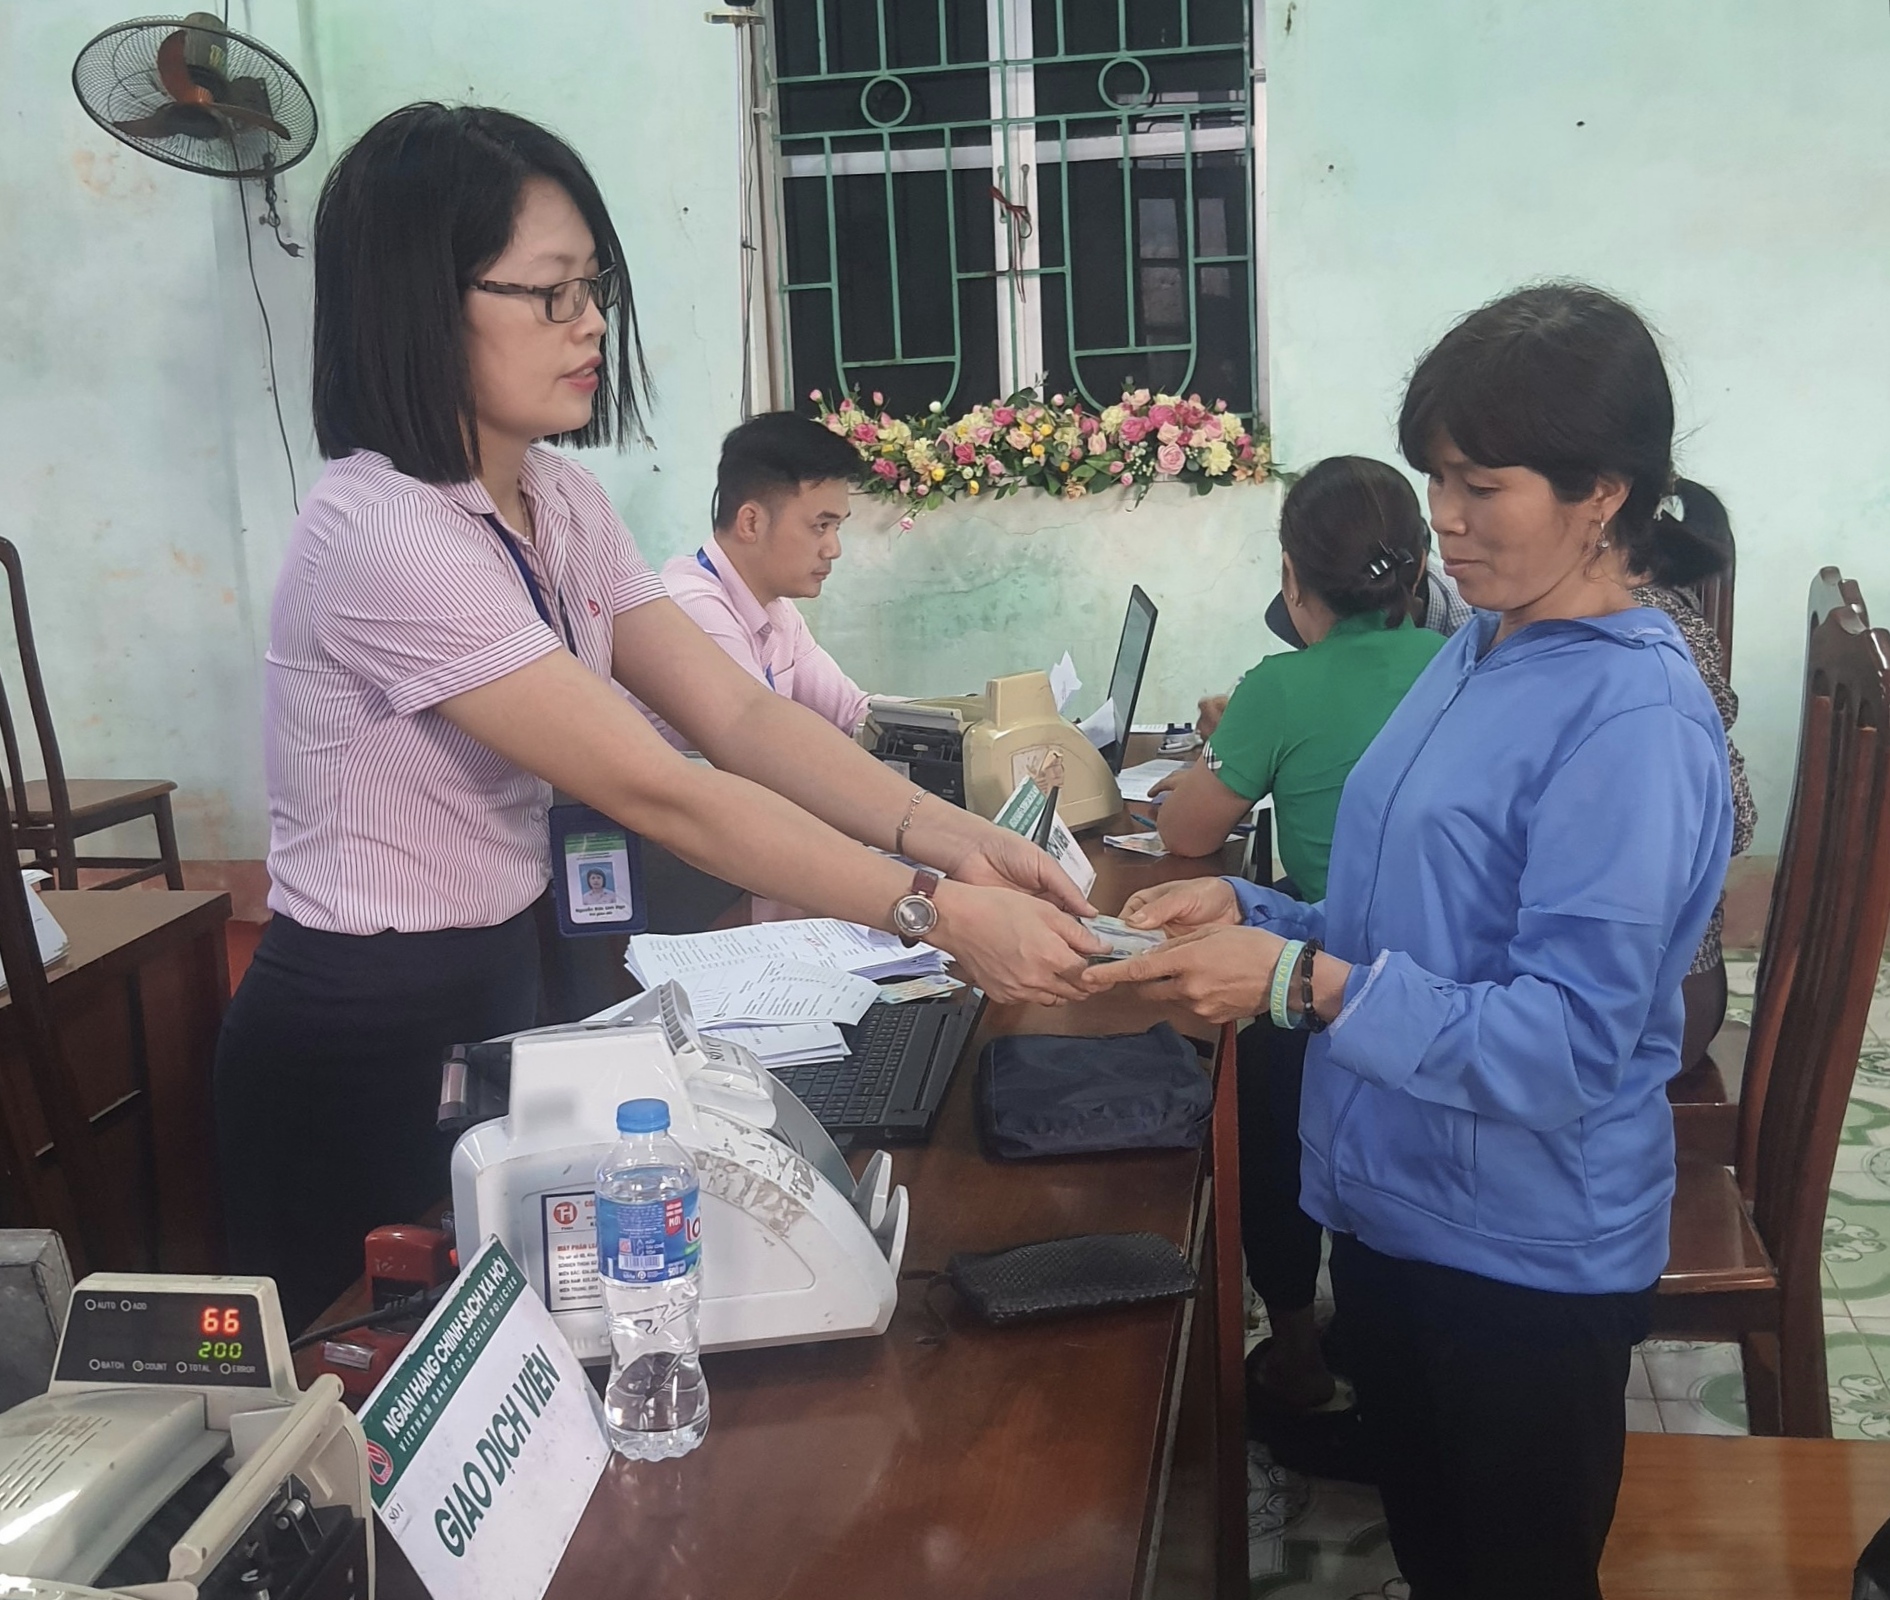 Ngân hàng Chính sách huyện tiếp tục giải ngân nhu cầu vay vốn của hộ nghèo và đối tượng chính sách tại xã Tiên Phong